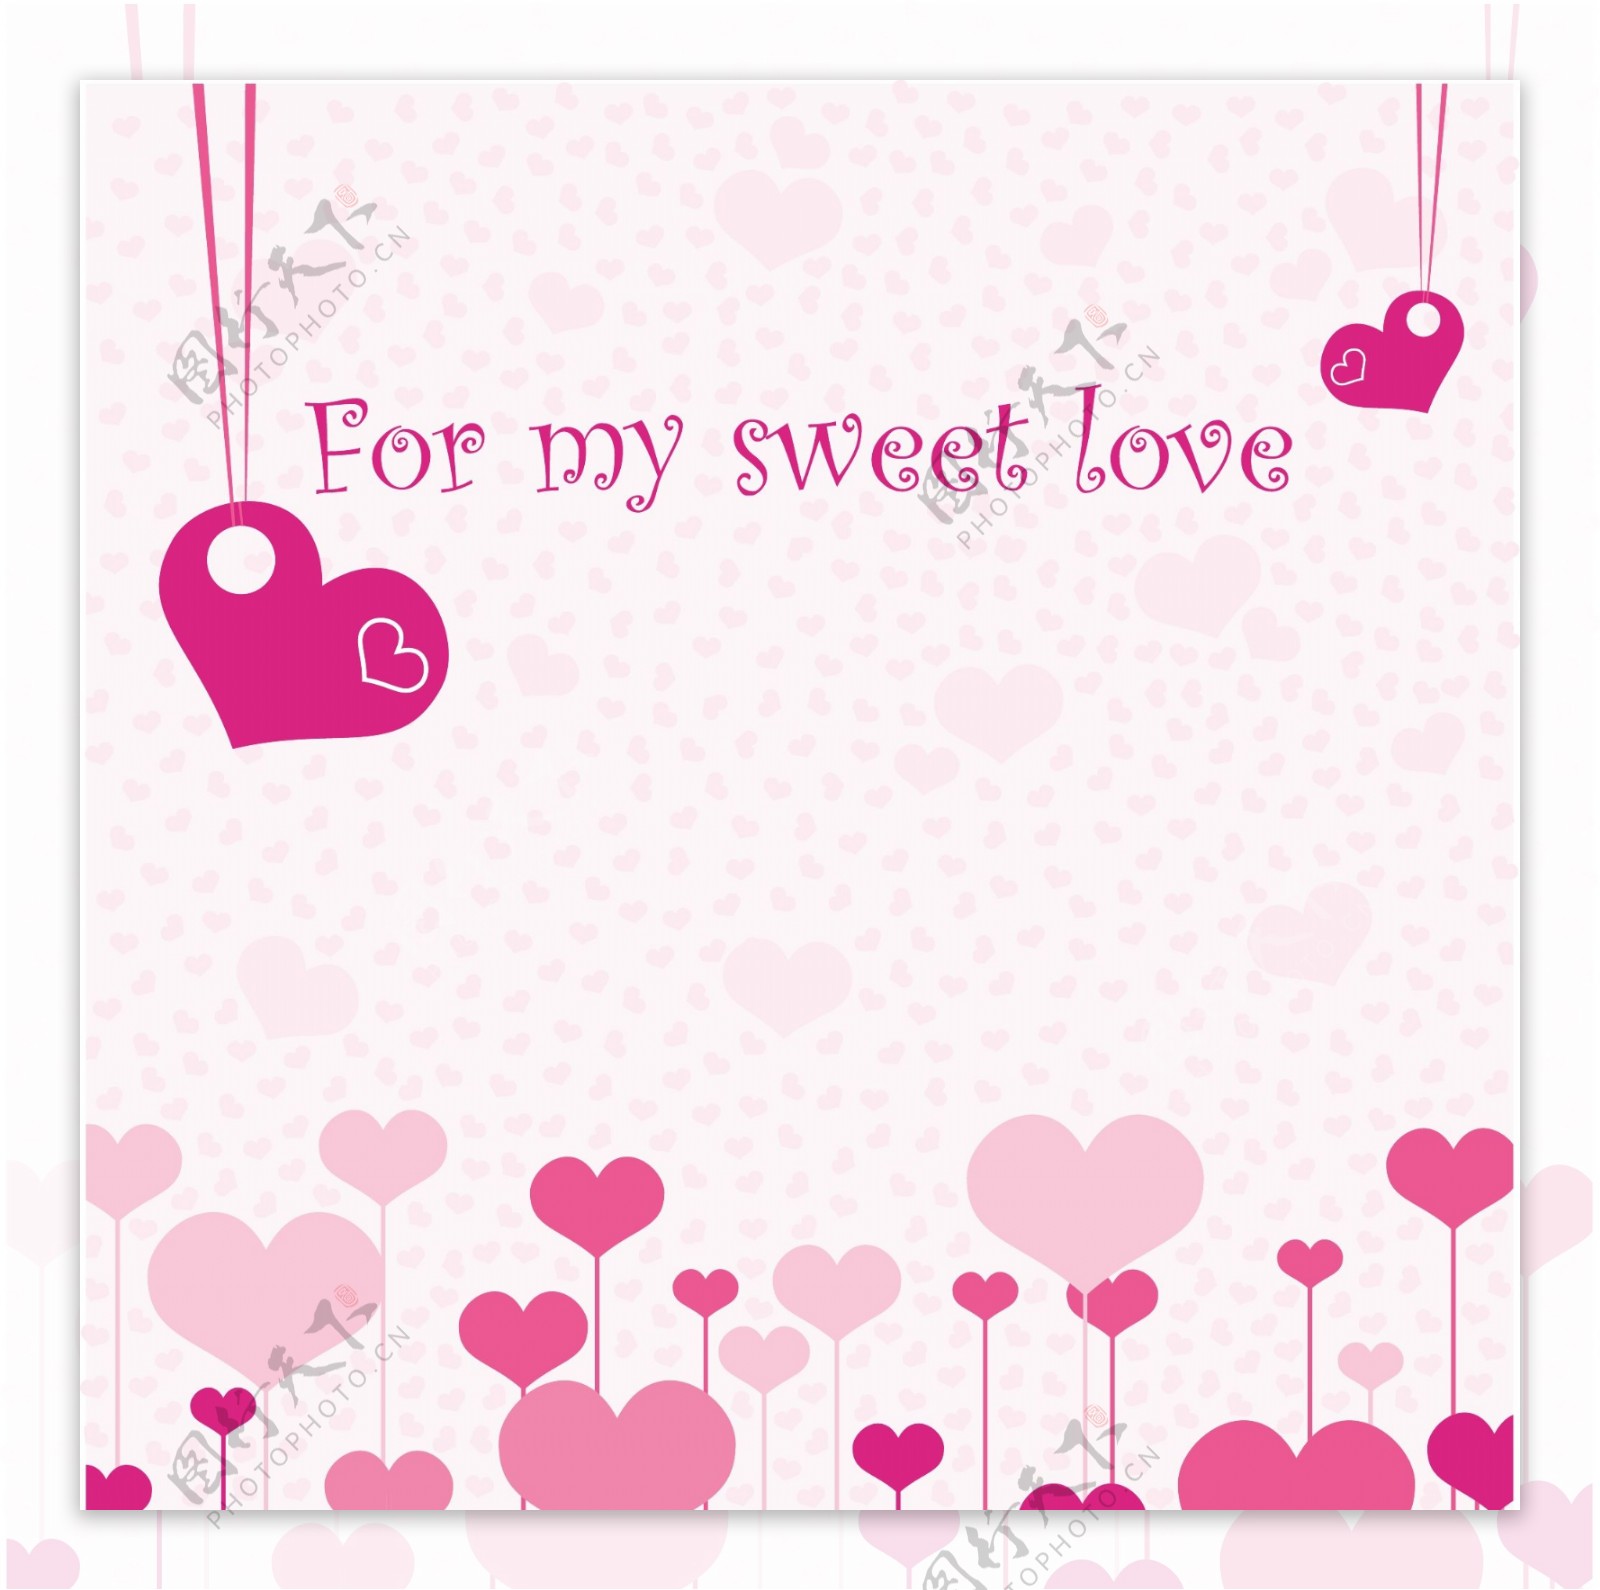 可爱的浪漫的情人节贺卡矢量素材的粉红色的心的爱